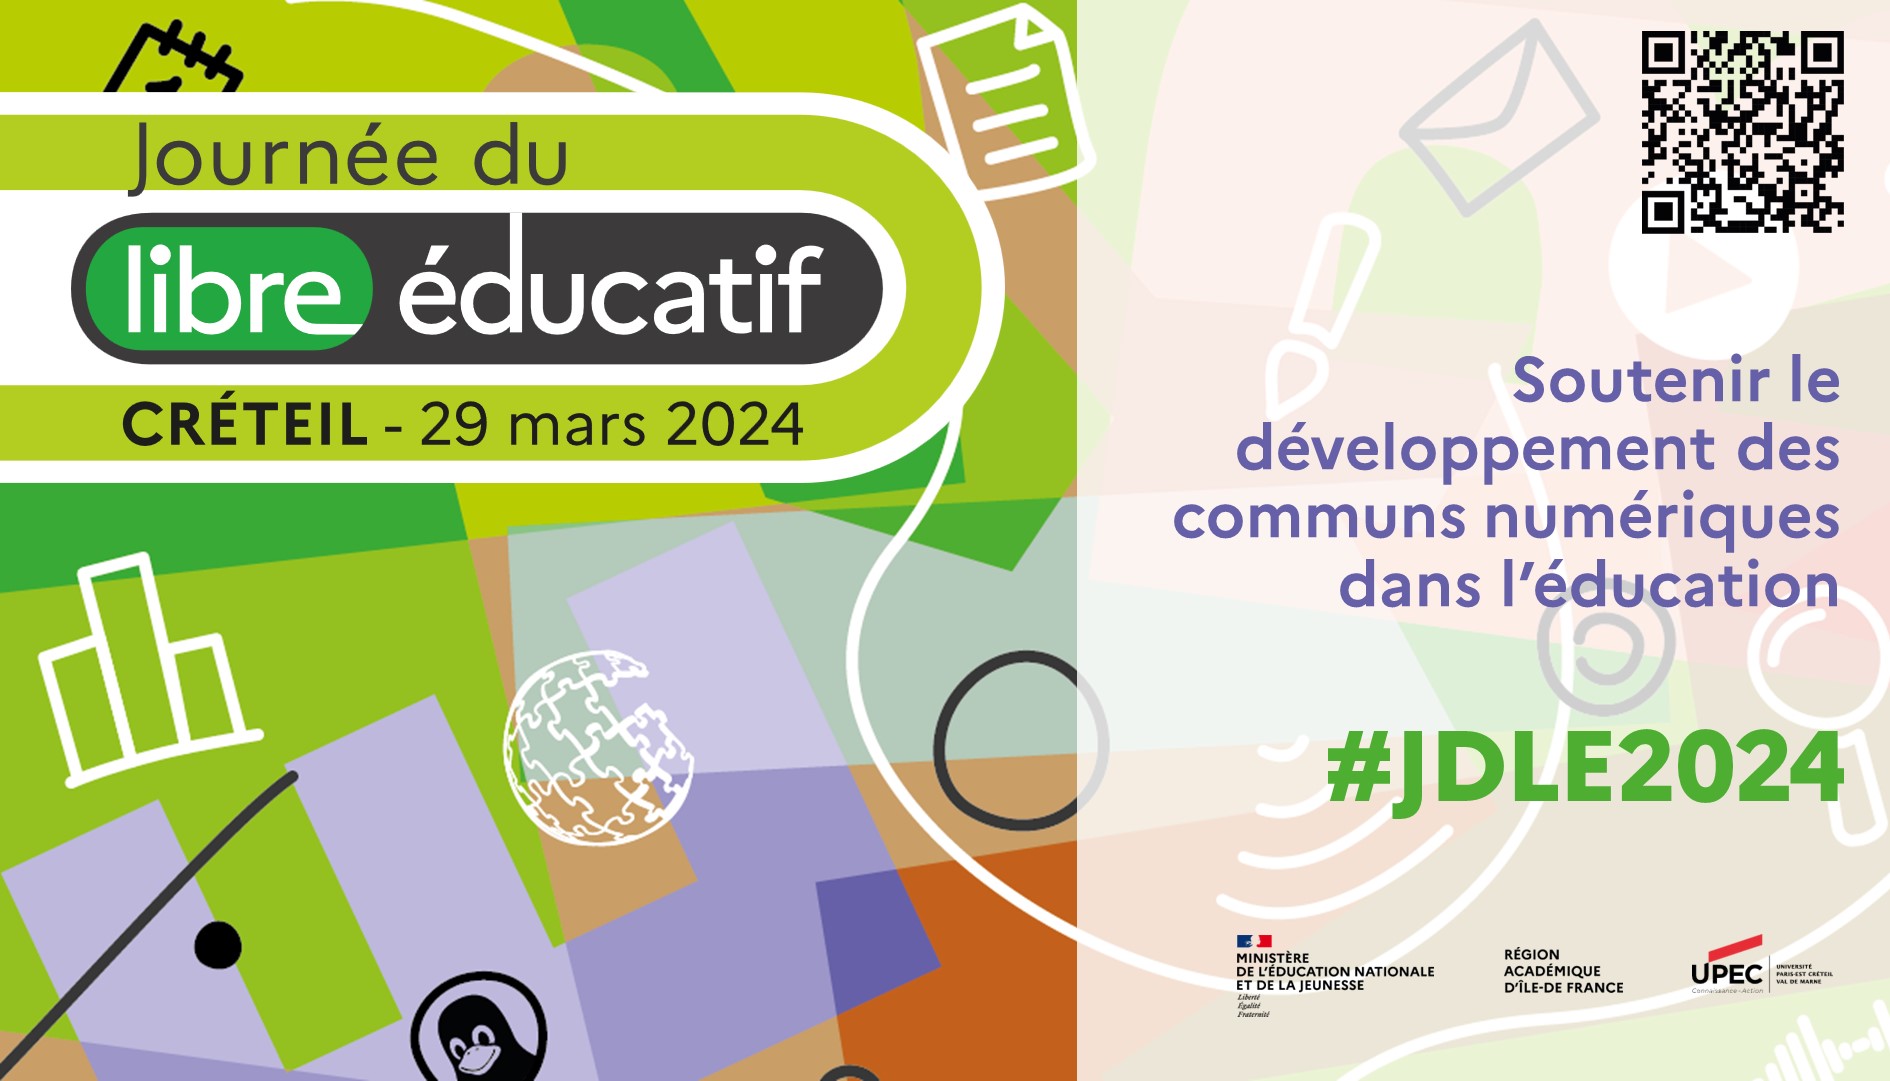 Affiche de présentation de la Journée du Libre Éducatif avec à droite la photographie de la Faculté de droit de l'Université Paris-Est Créteil